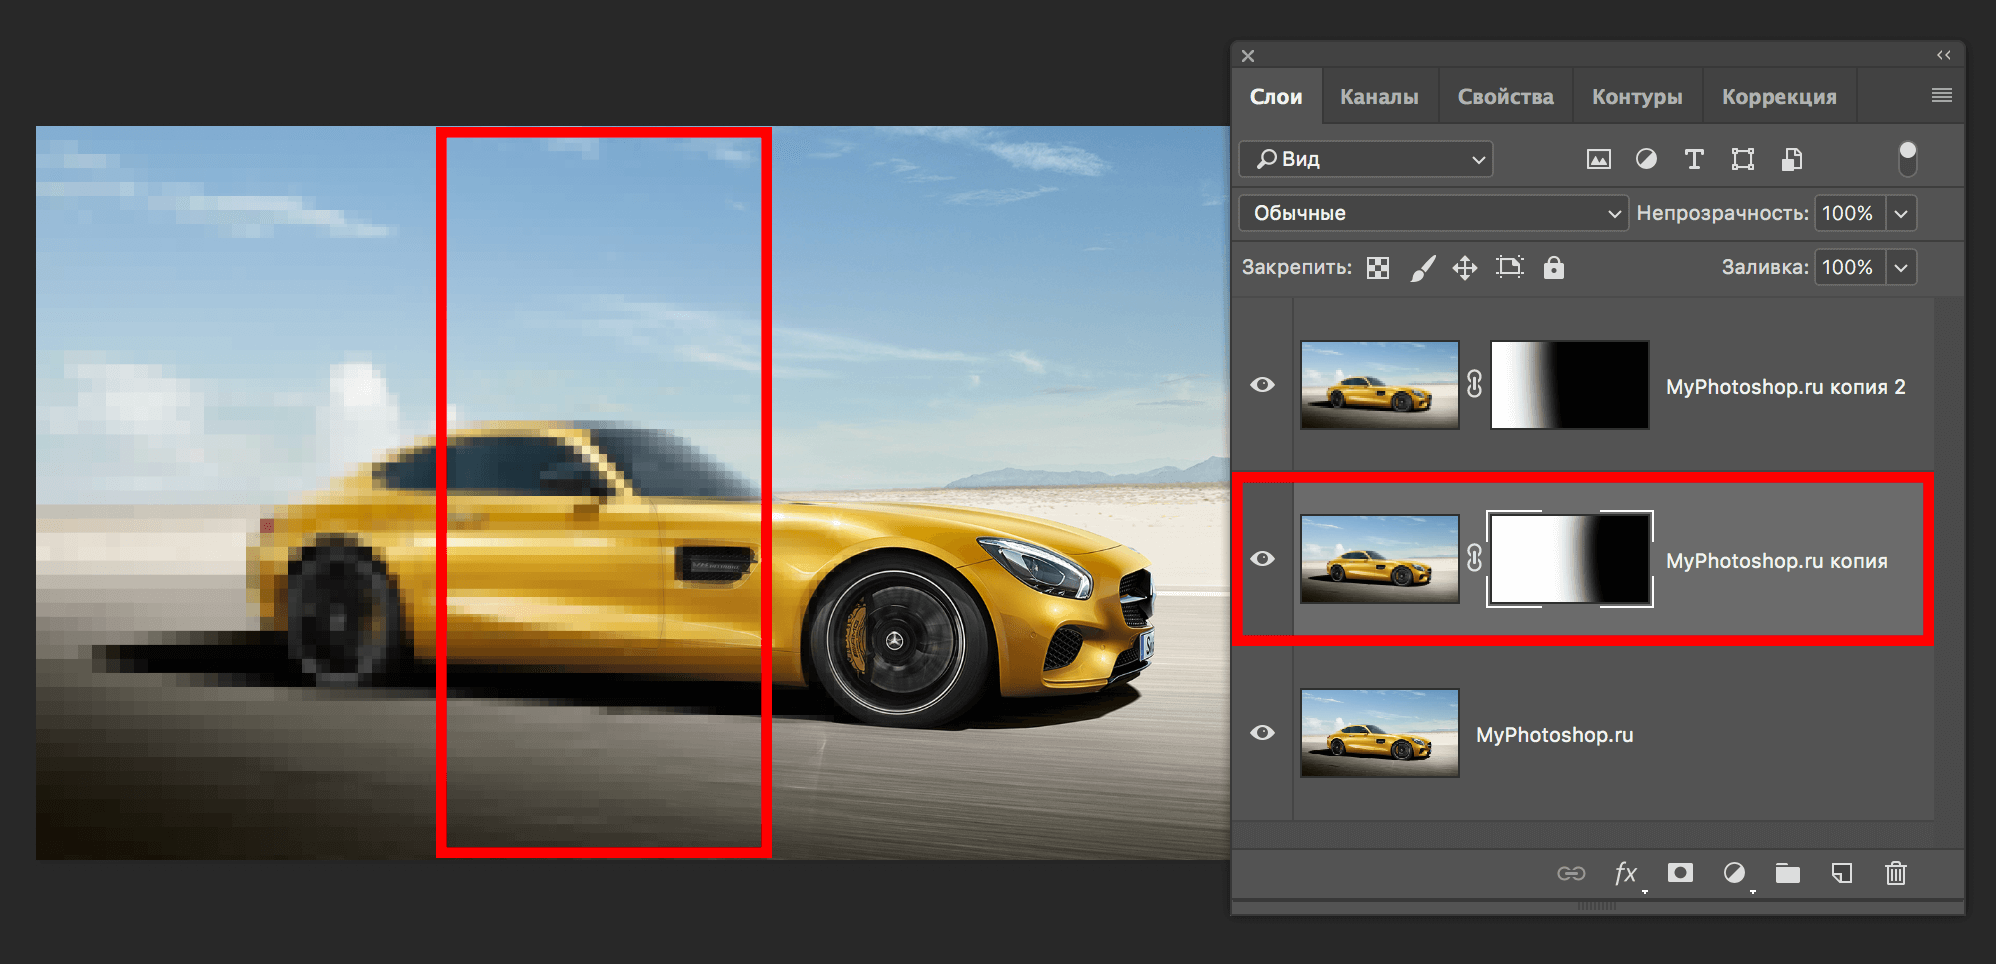 Увеличьте разрешение изображения в Photoshop - вот простое руководство для начинающих